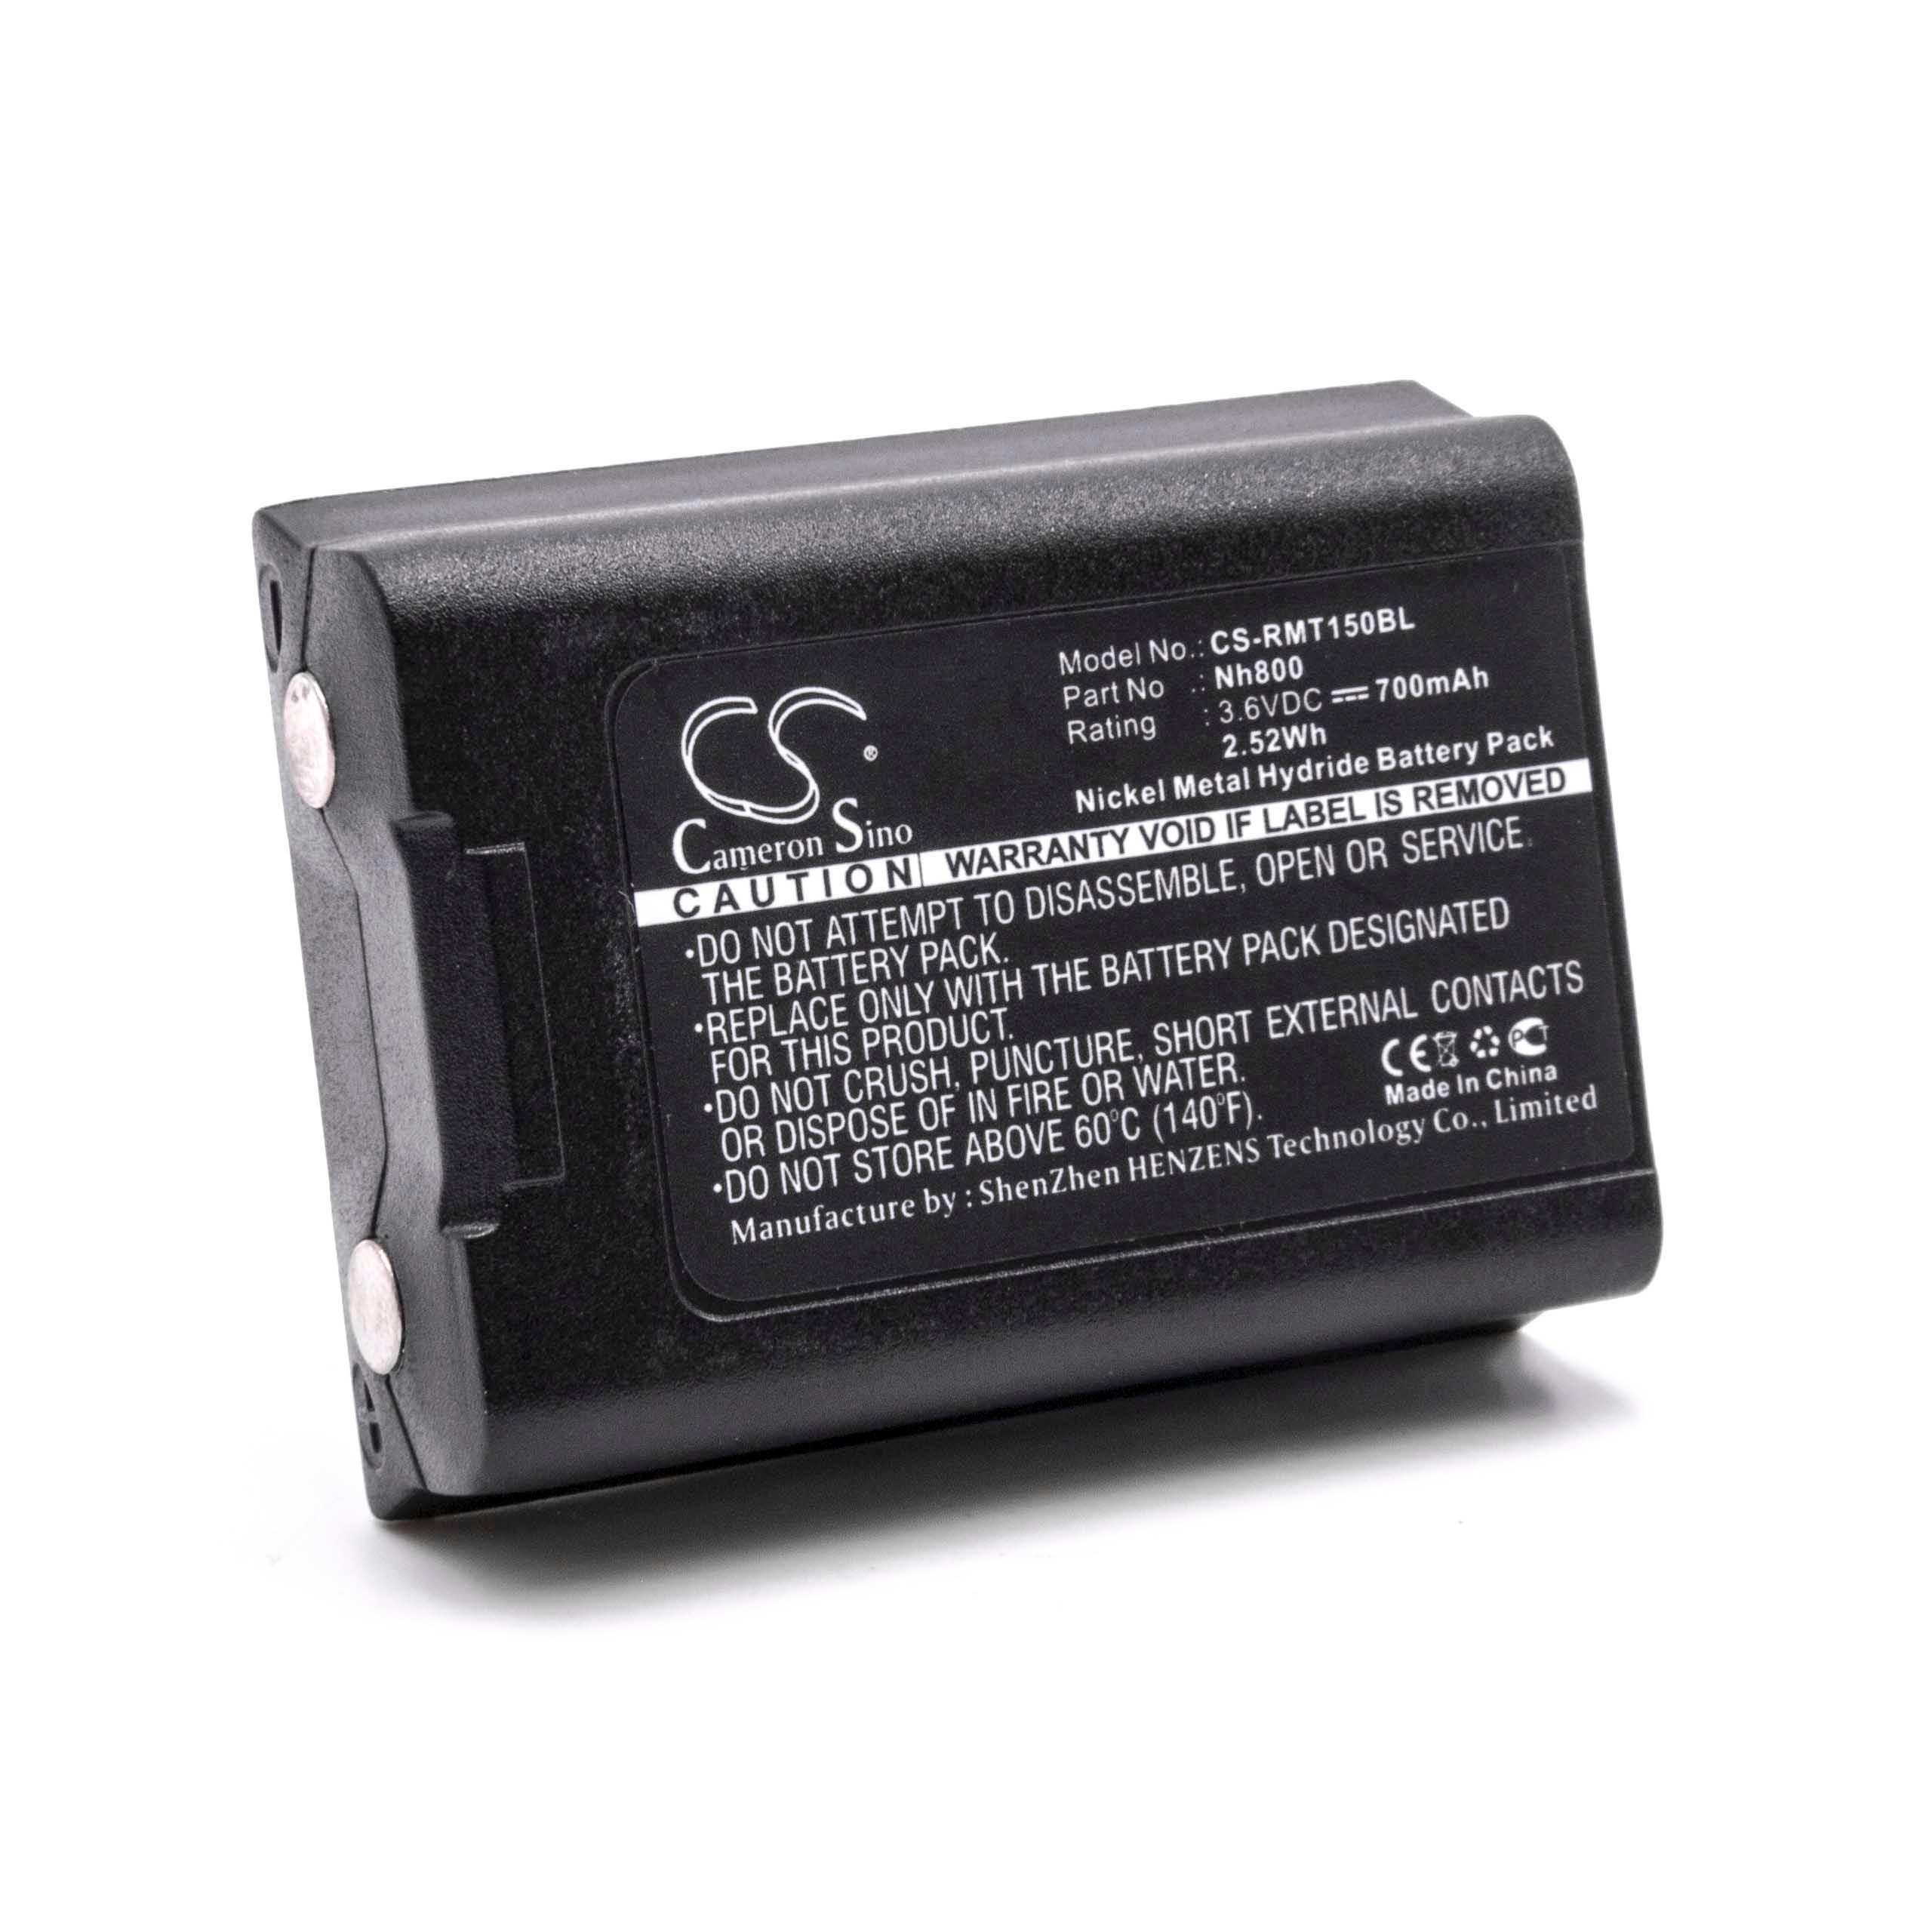 Batterie remplace Ravioli NH800 pour télécommande - 700mAh 3,6V NiMH